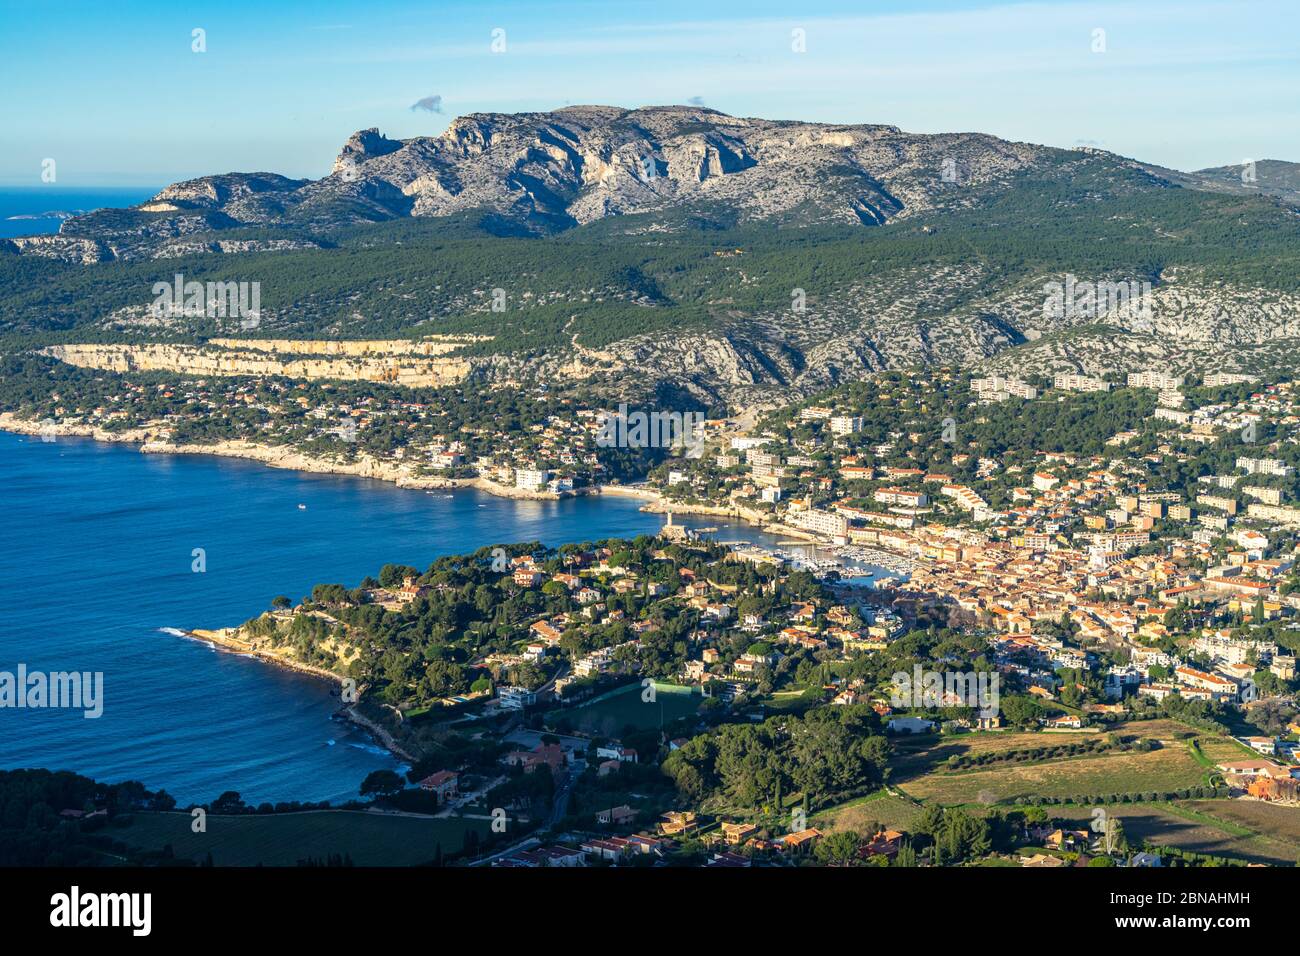 Belle vue aérienne de Cassis, une célèbre station balnéaire du sud de la France près de Marseille Banque D'Images